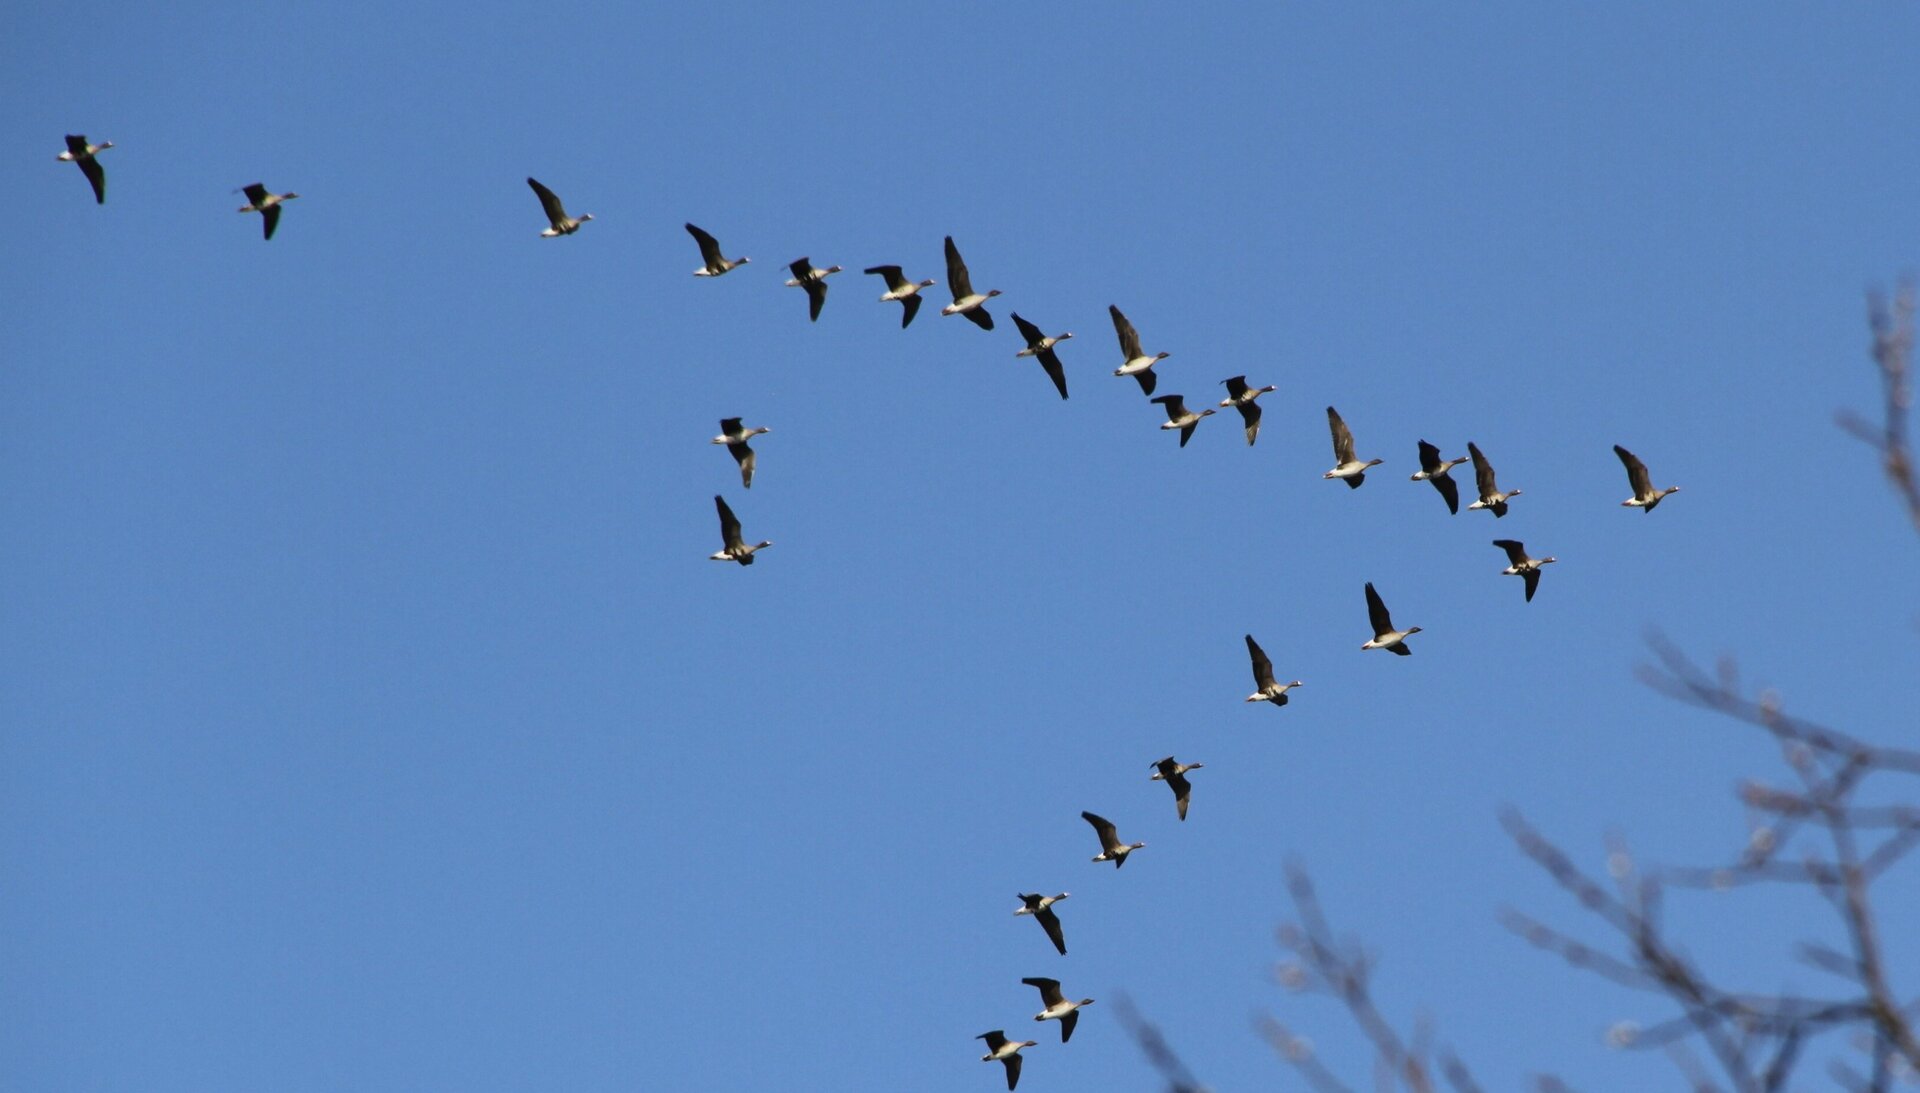 ESA - Swarm yields new insight into animal migration